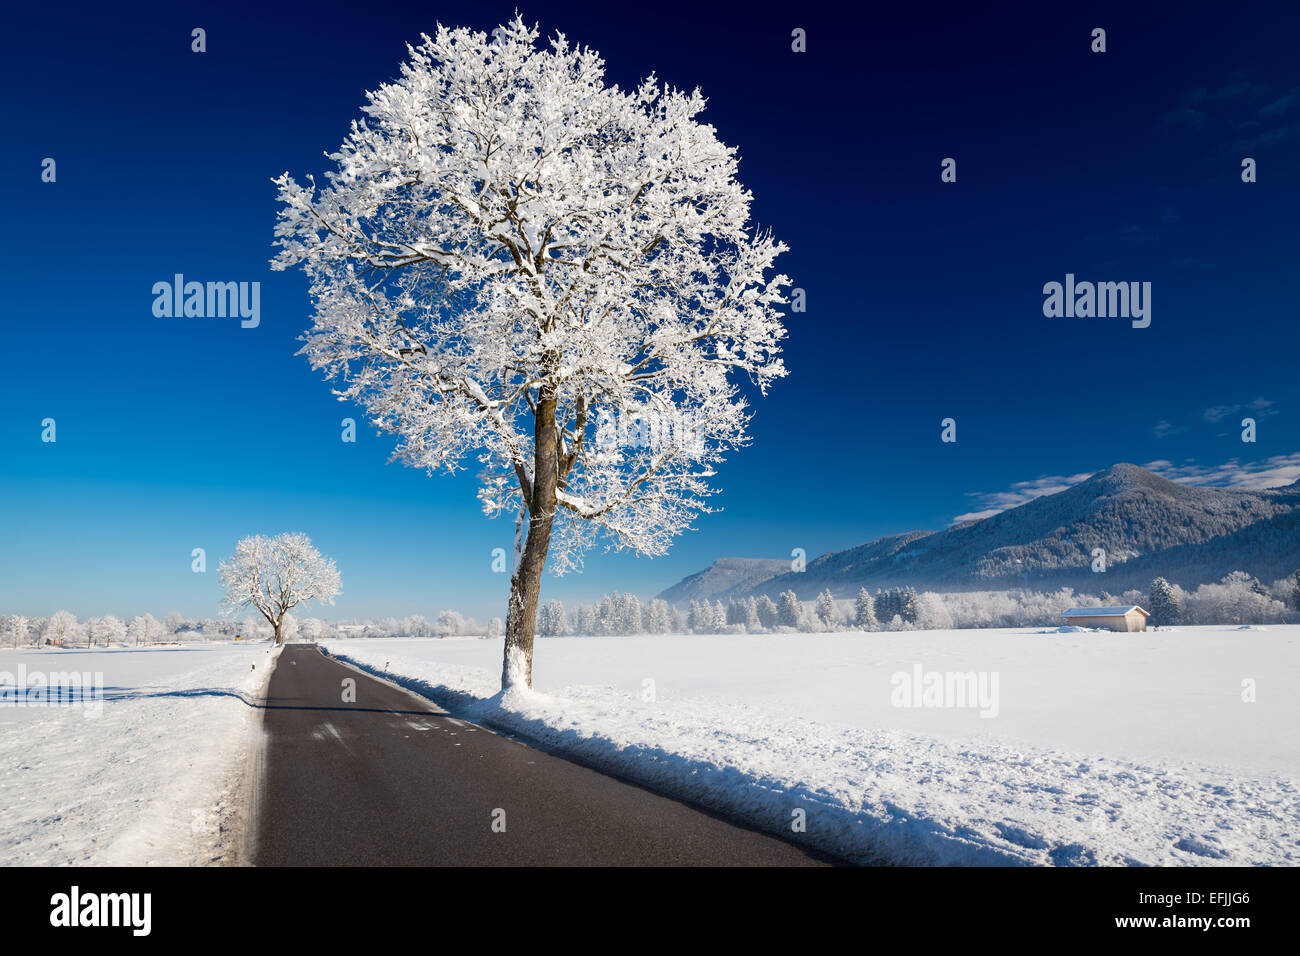 Winter landscape at a sunny day. Allgäu, Germany Stock Photo